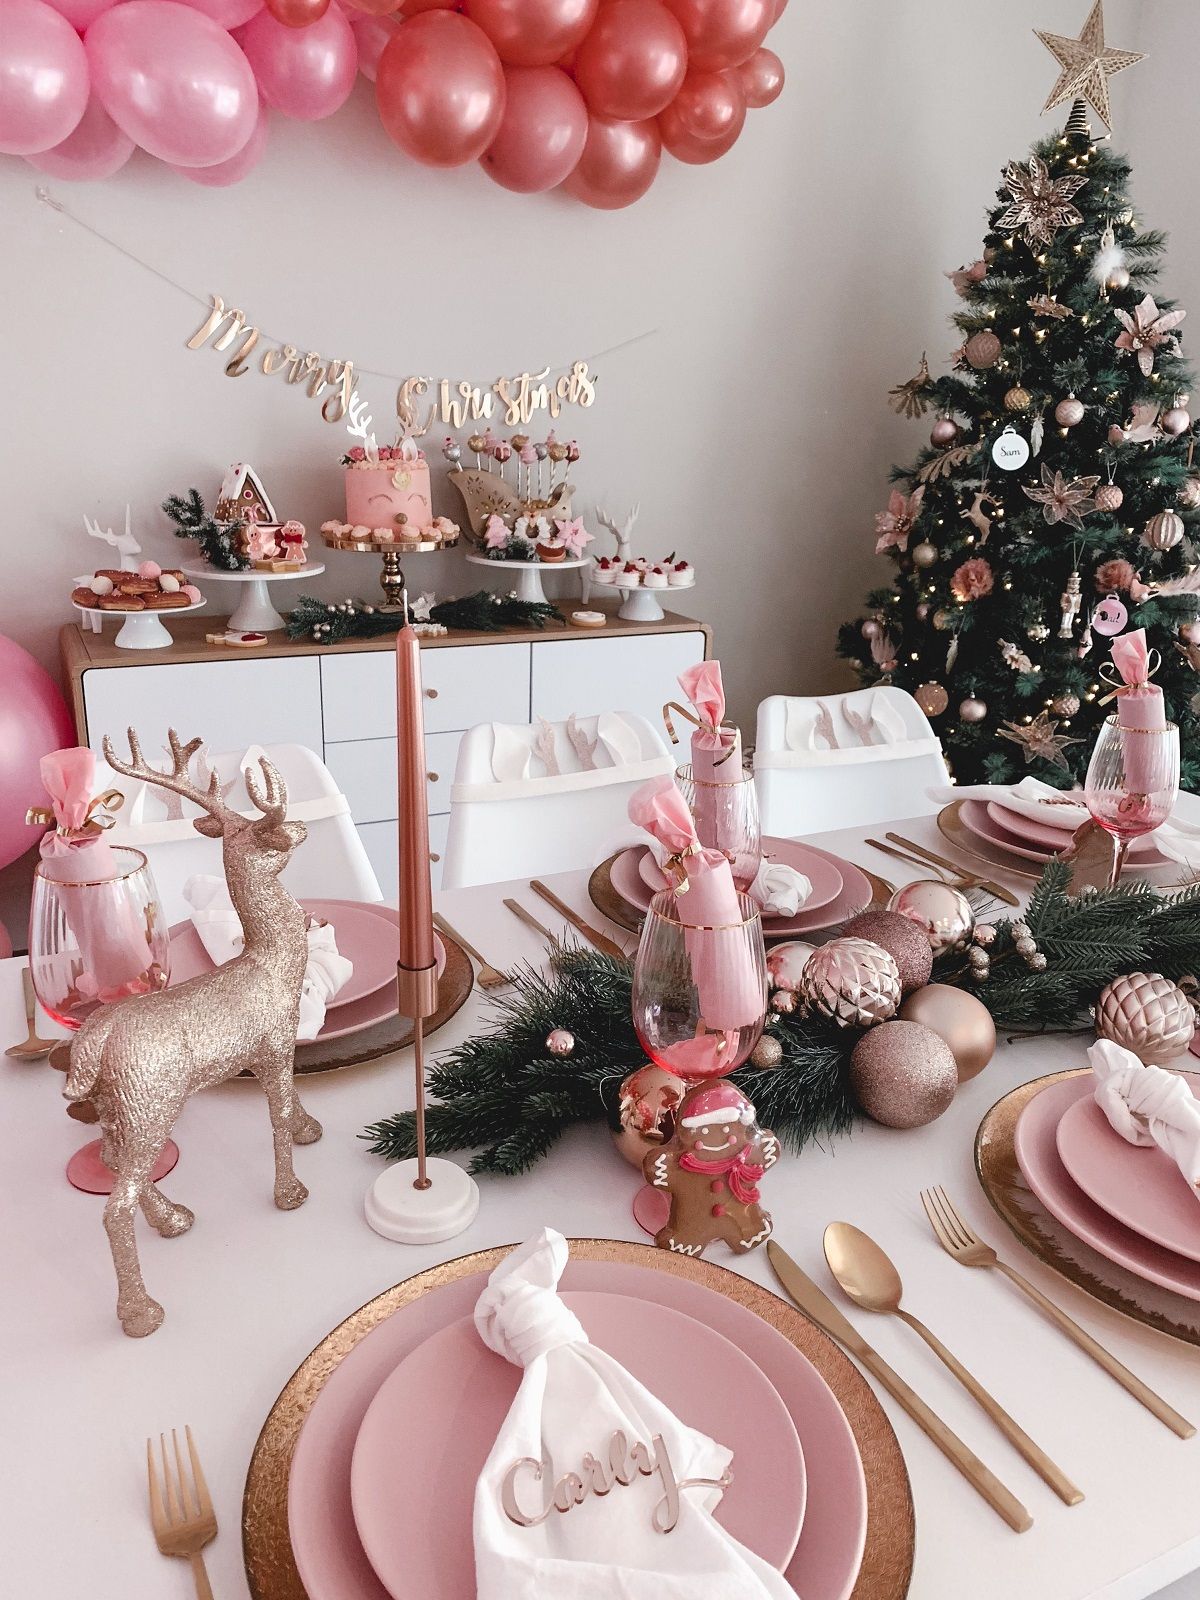 deco de table Noël en couleurs pastel camaïeu de rose ambiance sereine au féminin